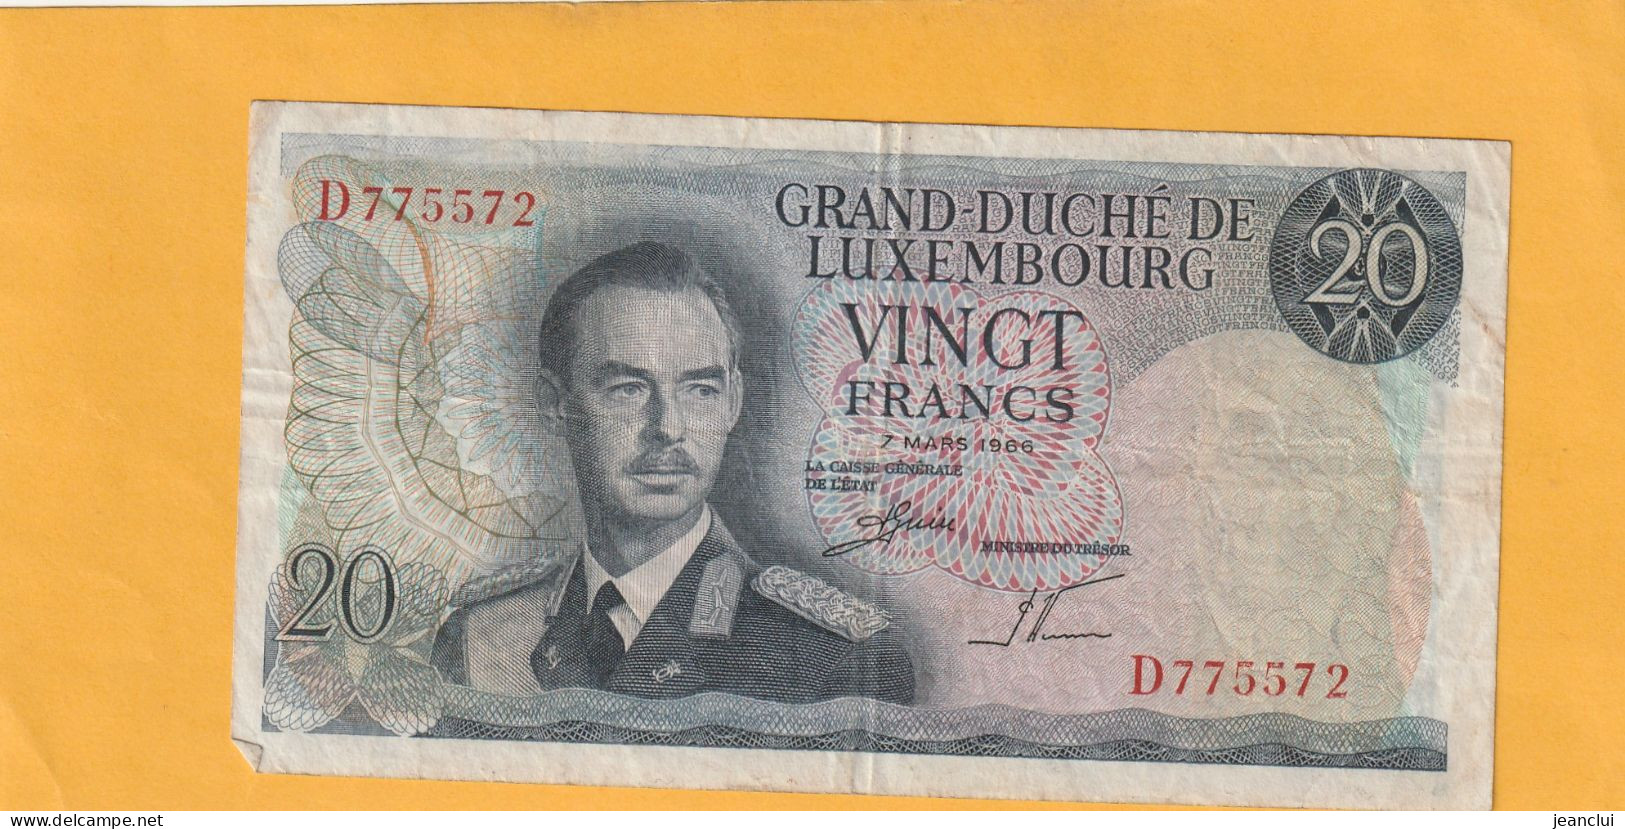 GRAND-DUCHE DE LUXEMBOURG  .  20 FRANCS  .  7-3-1966  .  N°  D 775572   .  2 SCANNES  .  BILLET USITE - Luxemburg